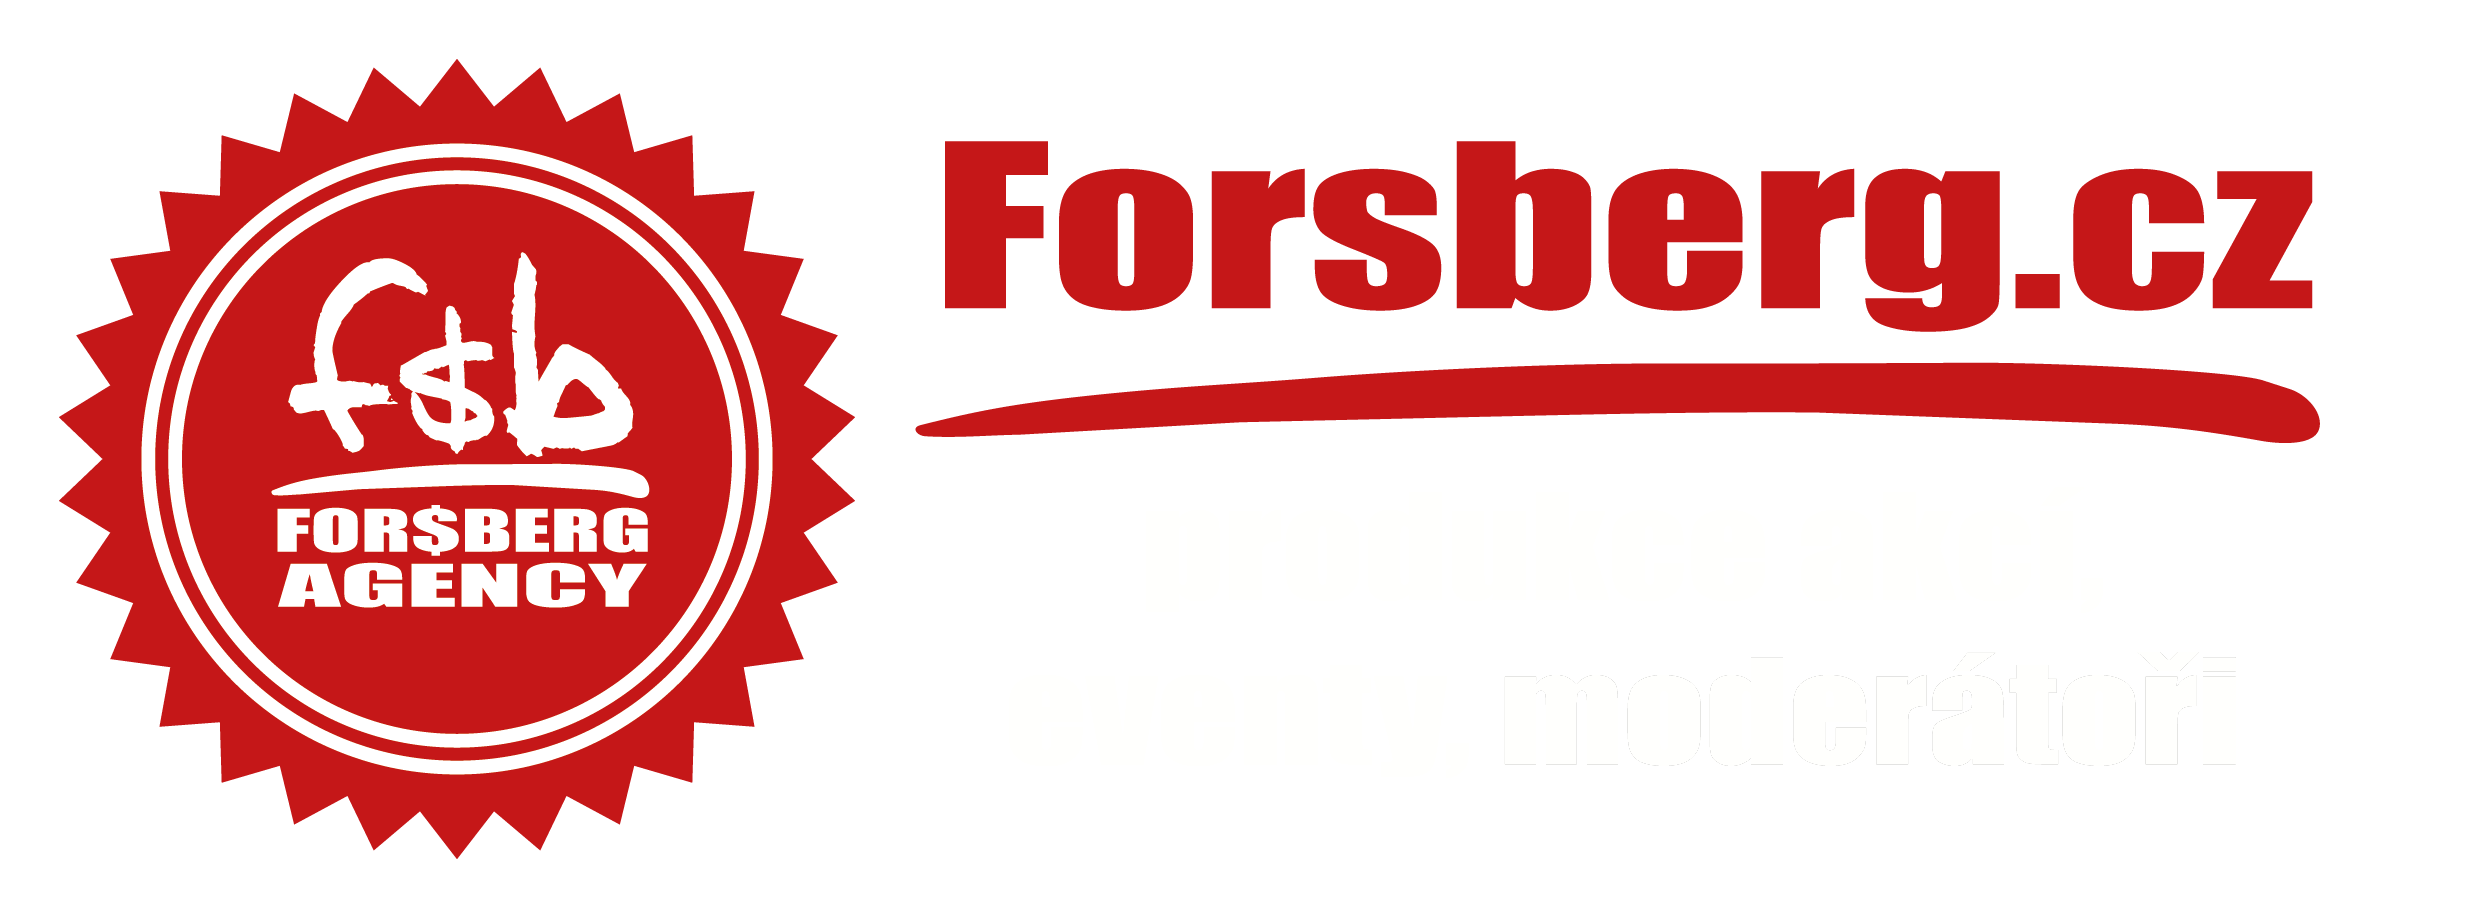 Forsberg agency